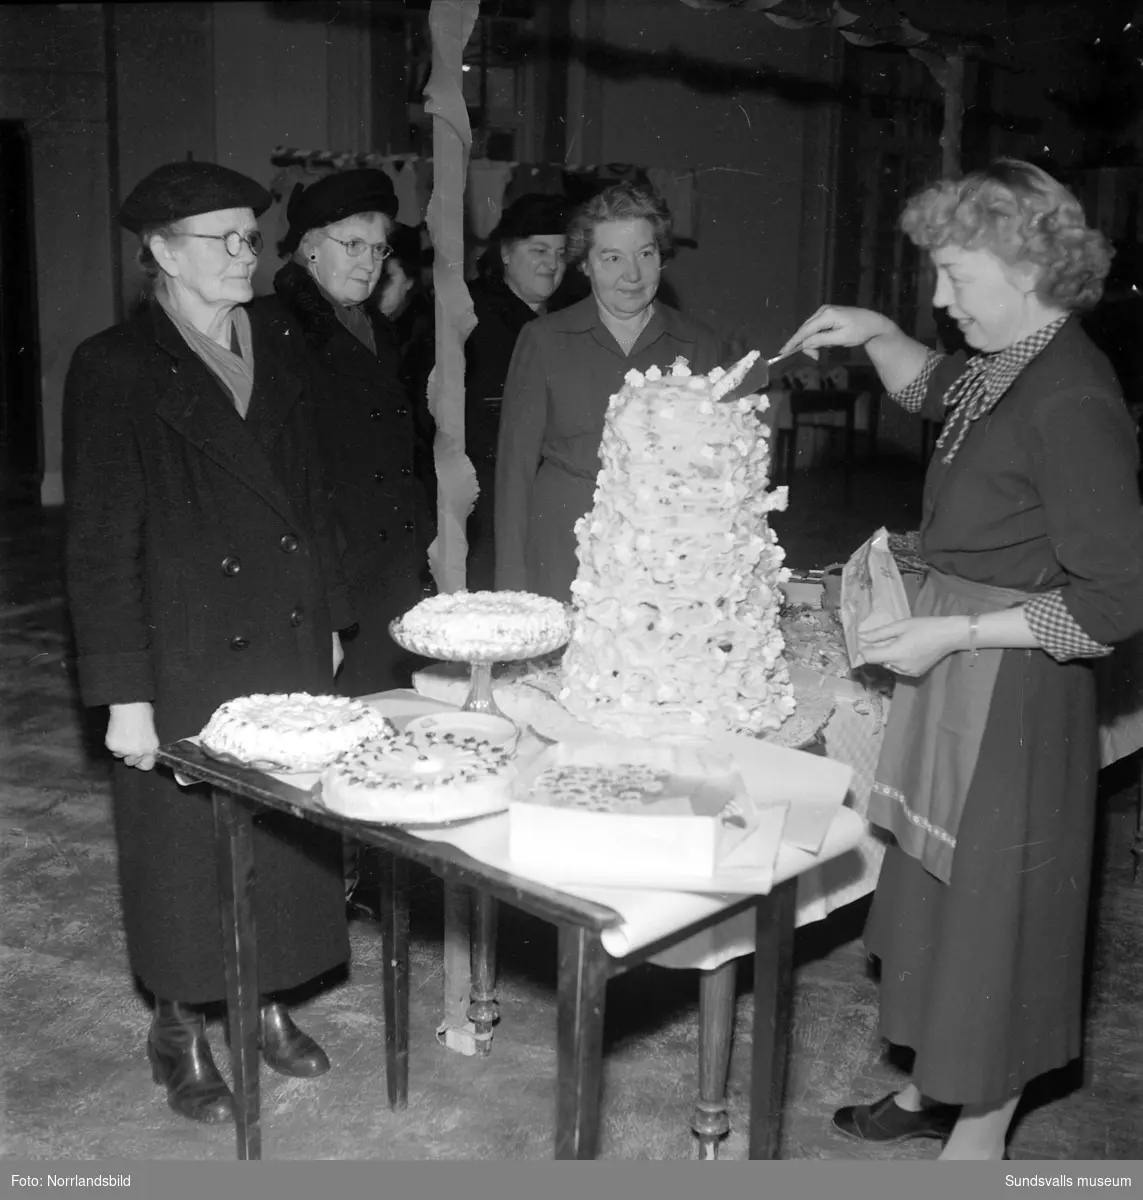 Hörselfrämjandets mässa på Församlingshuset. Kvinnor vid ett bord fullt av tårtor och andra godsaker, bland annat en imponerande spettekaka. En flicka och ett dockskåp.